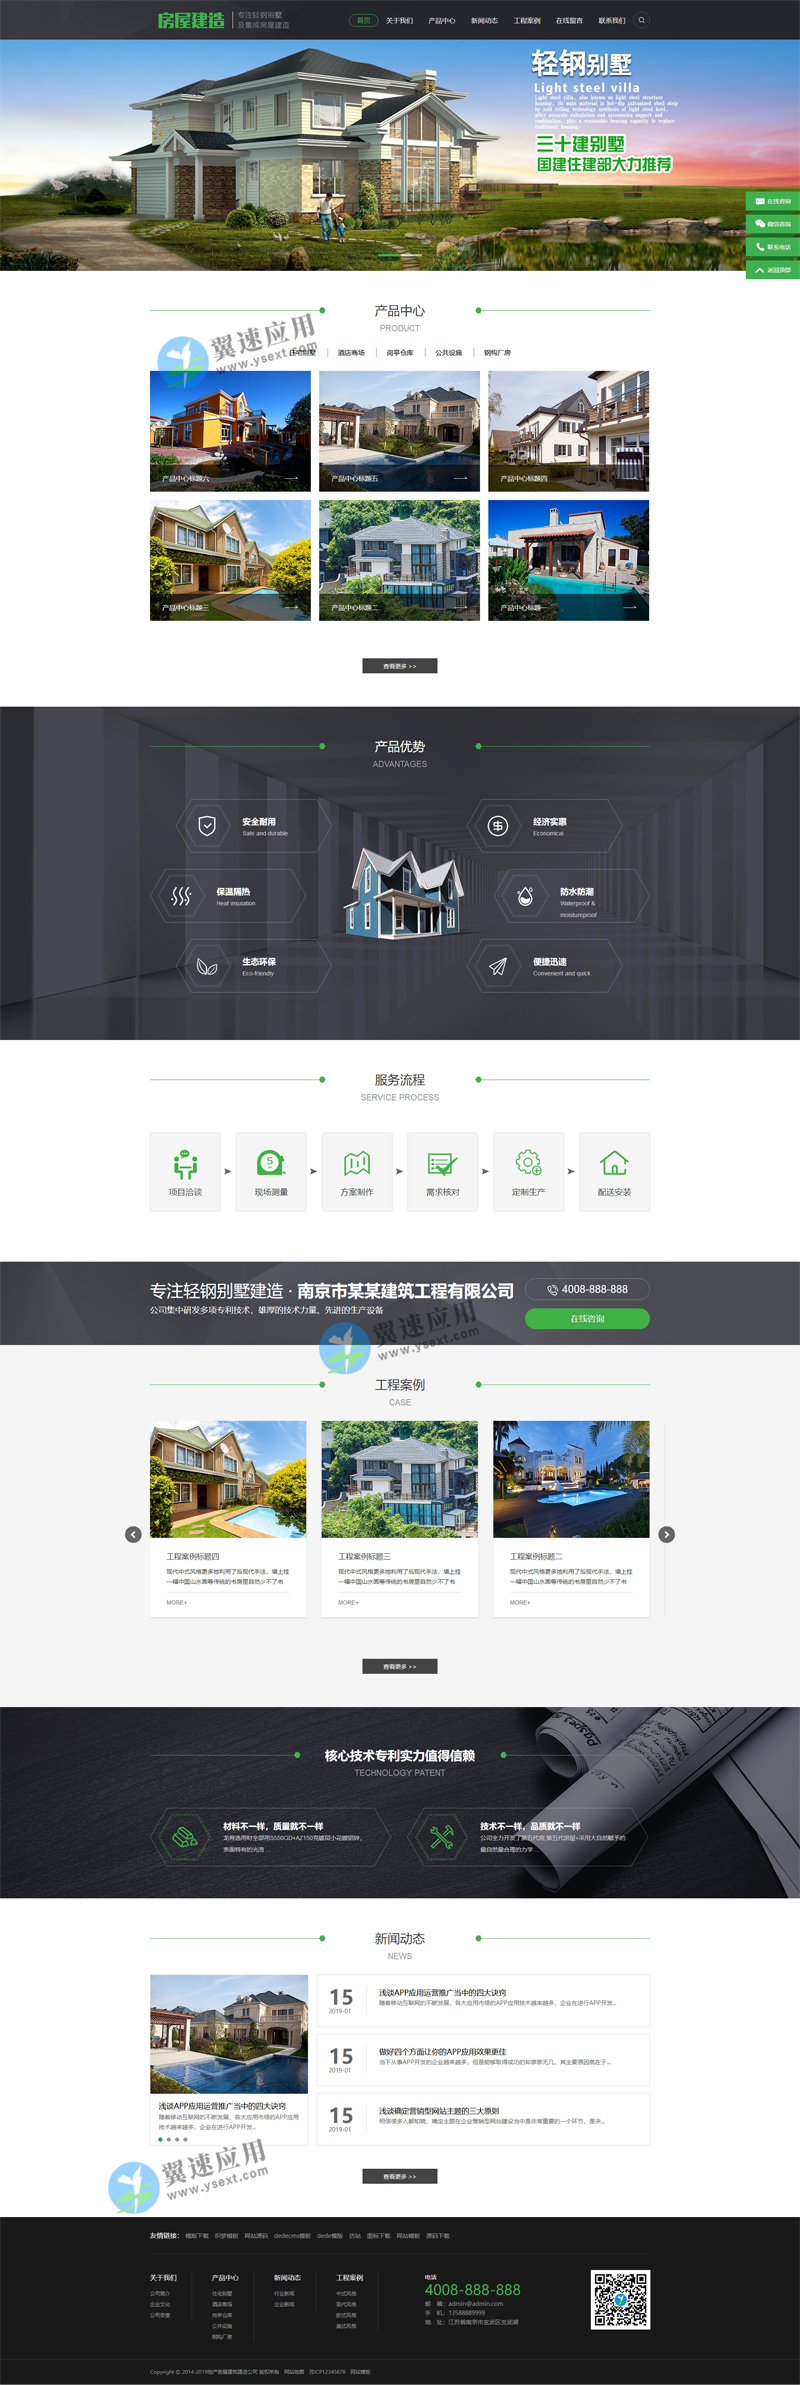 房地产网站模板图片.jpg